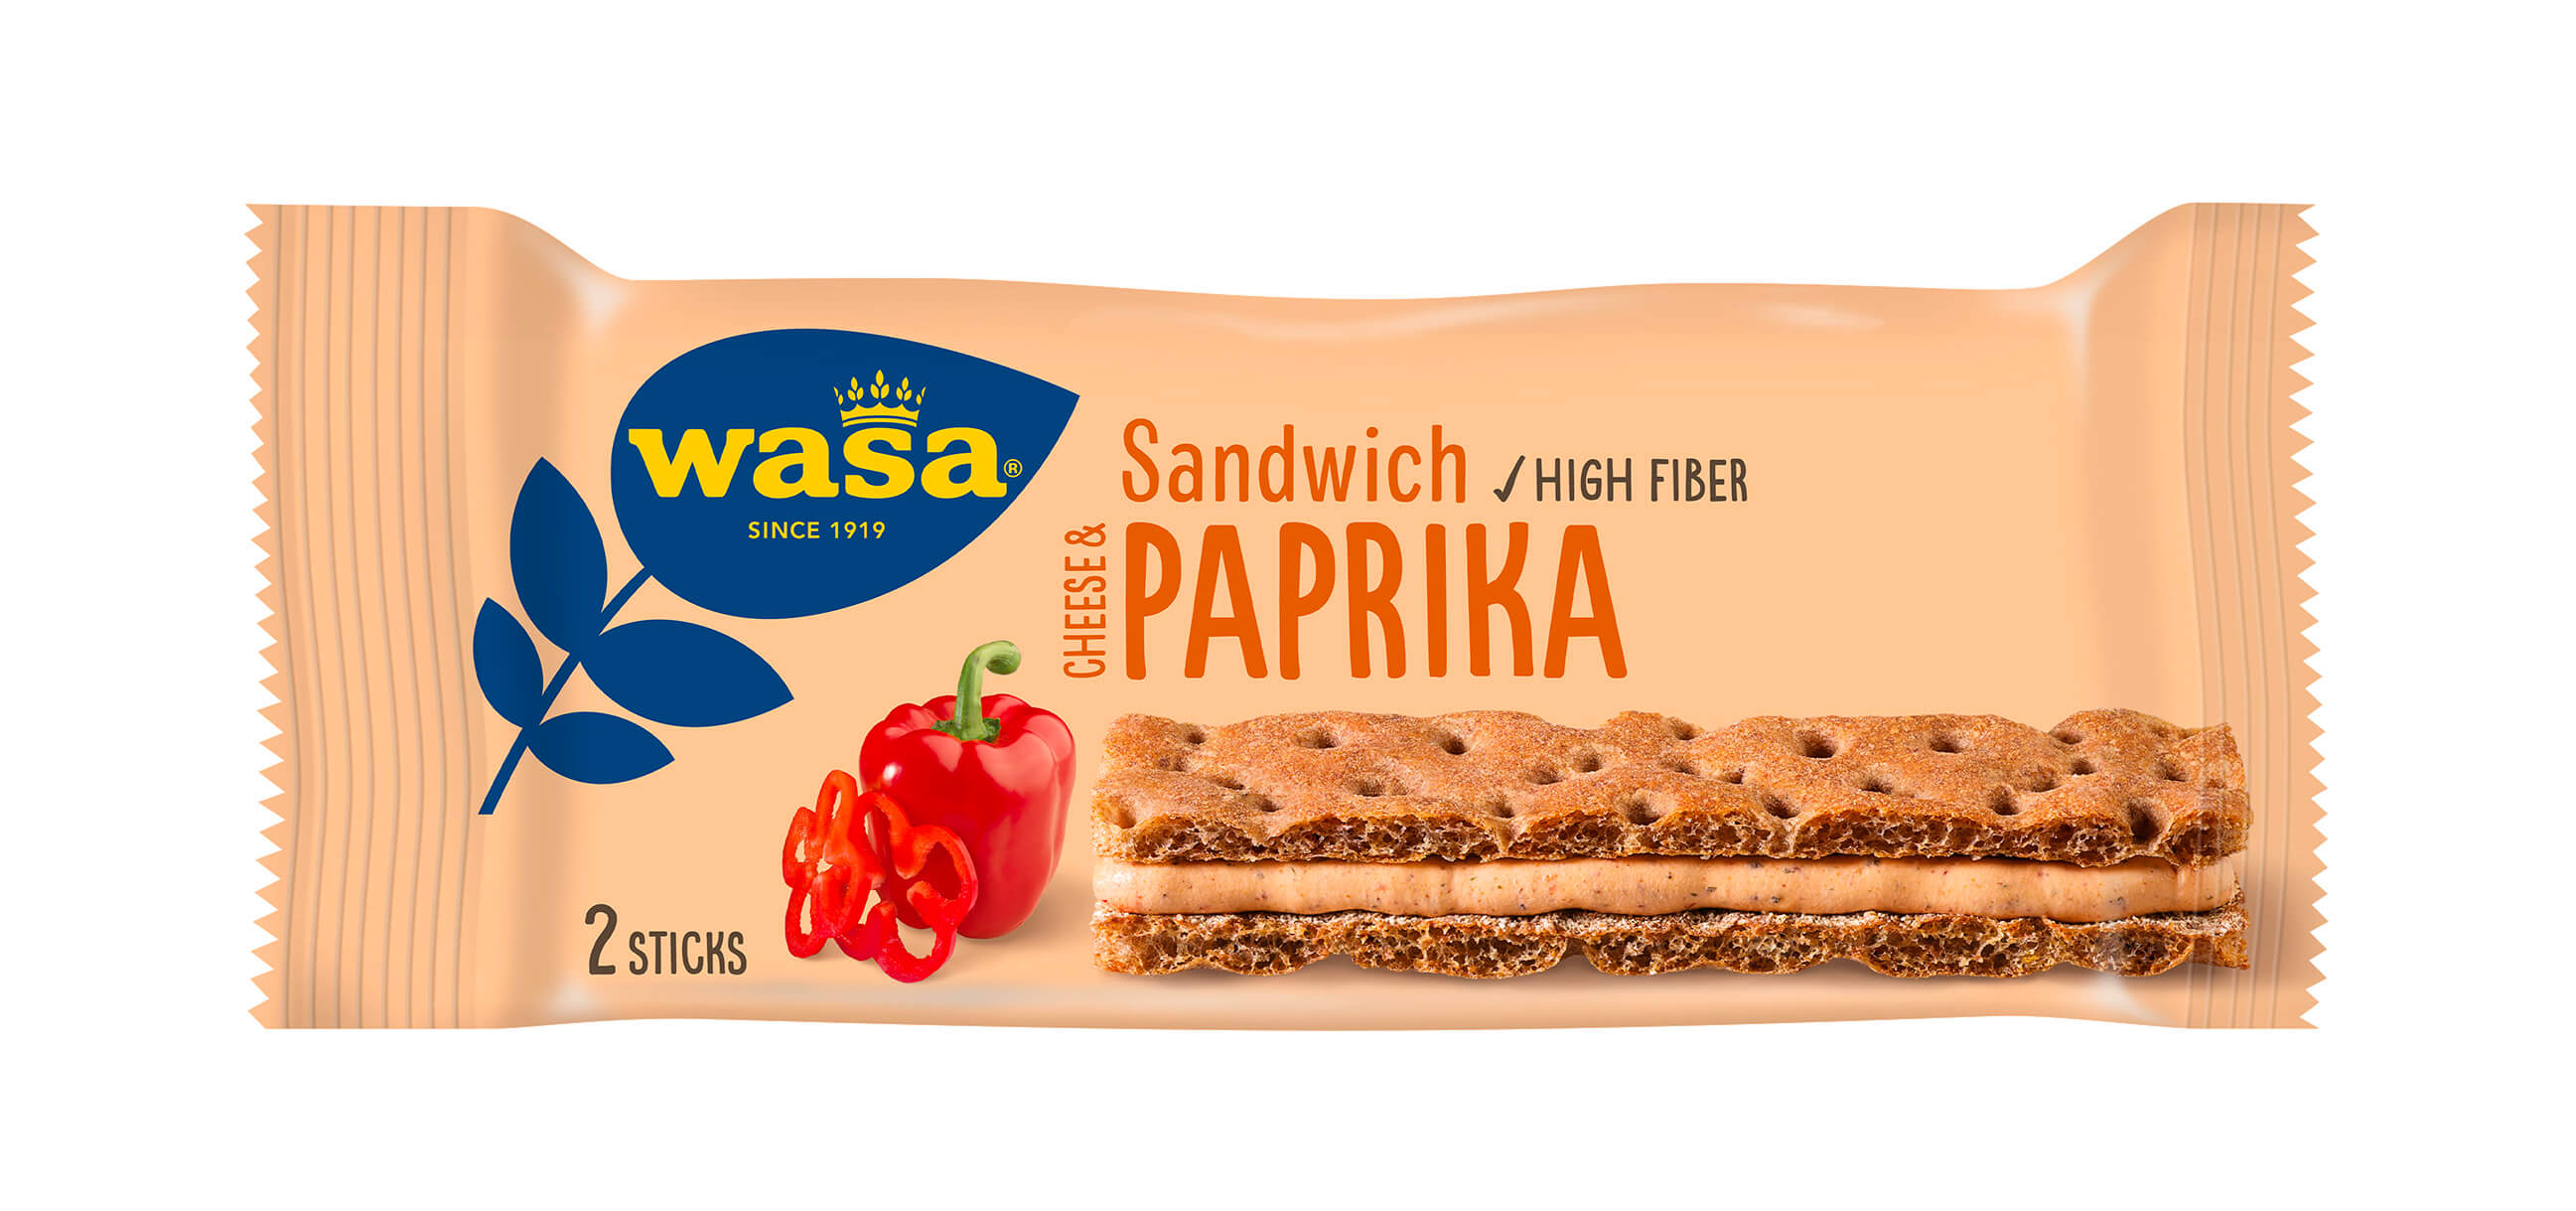 Wasa Sandwich Cheese & Paprika - Upptäck det perfekta mellanmålet, krispigt och gott knäckebröd med krämig fyllning. Perfekt som mellanmål på språng och som tips på mellanmål till jobbet, efter skolan eller innan träning.